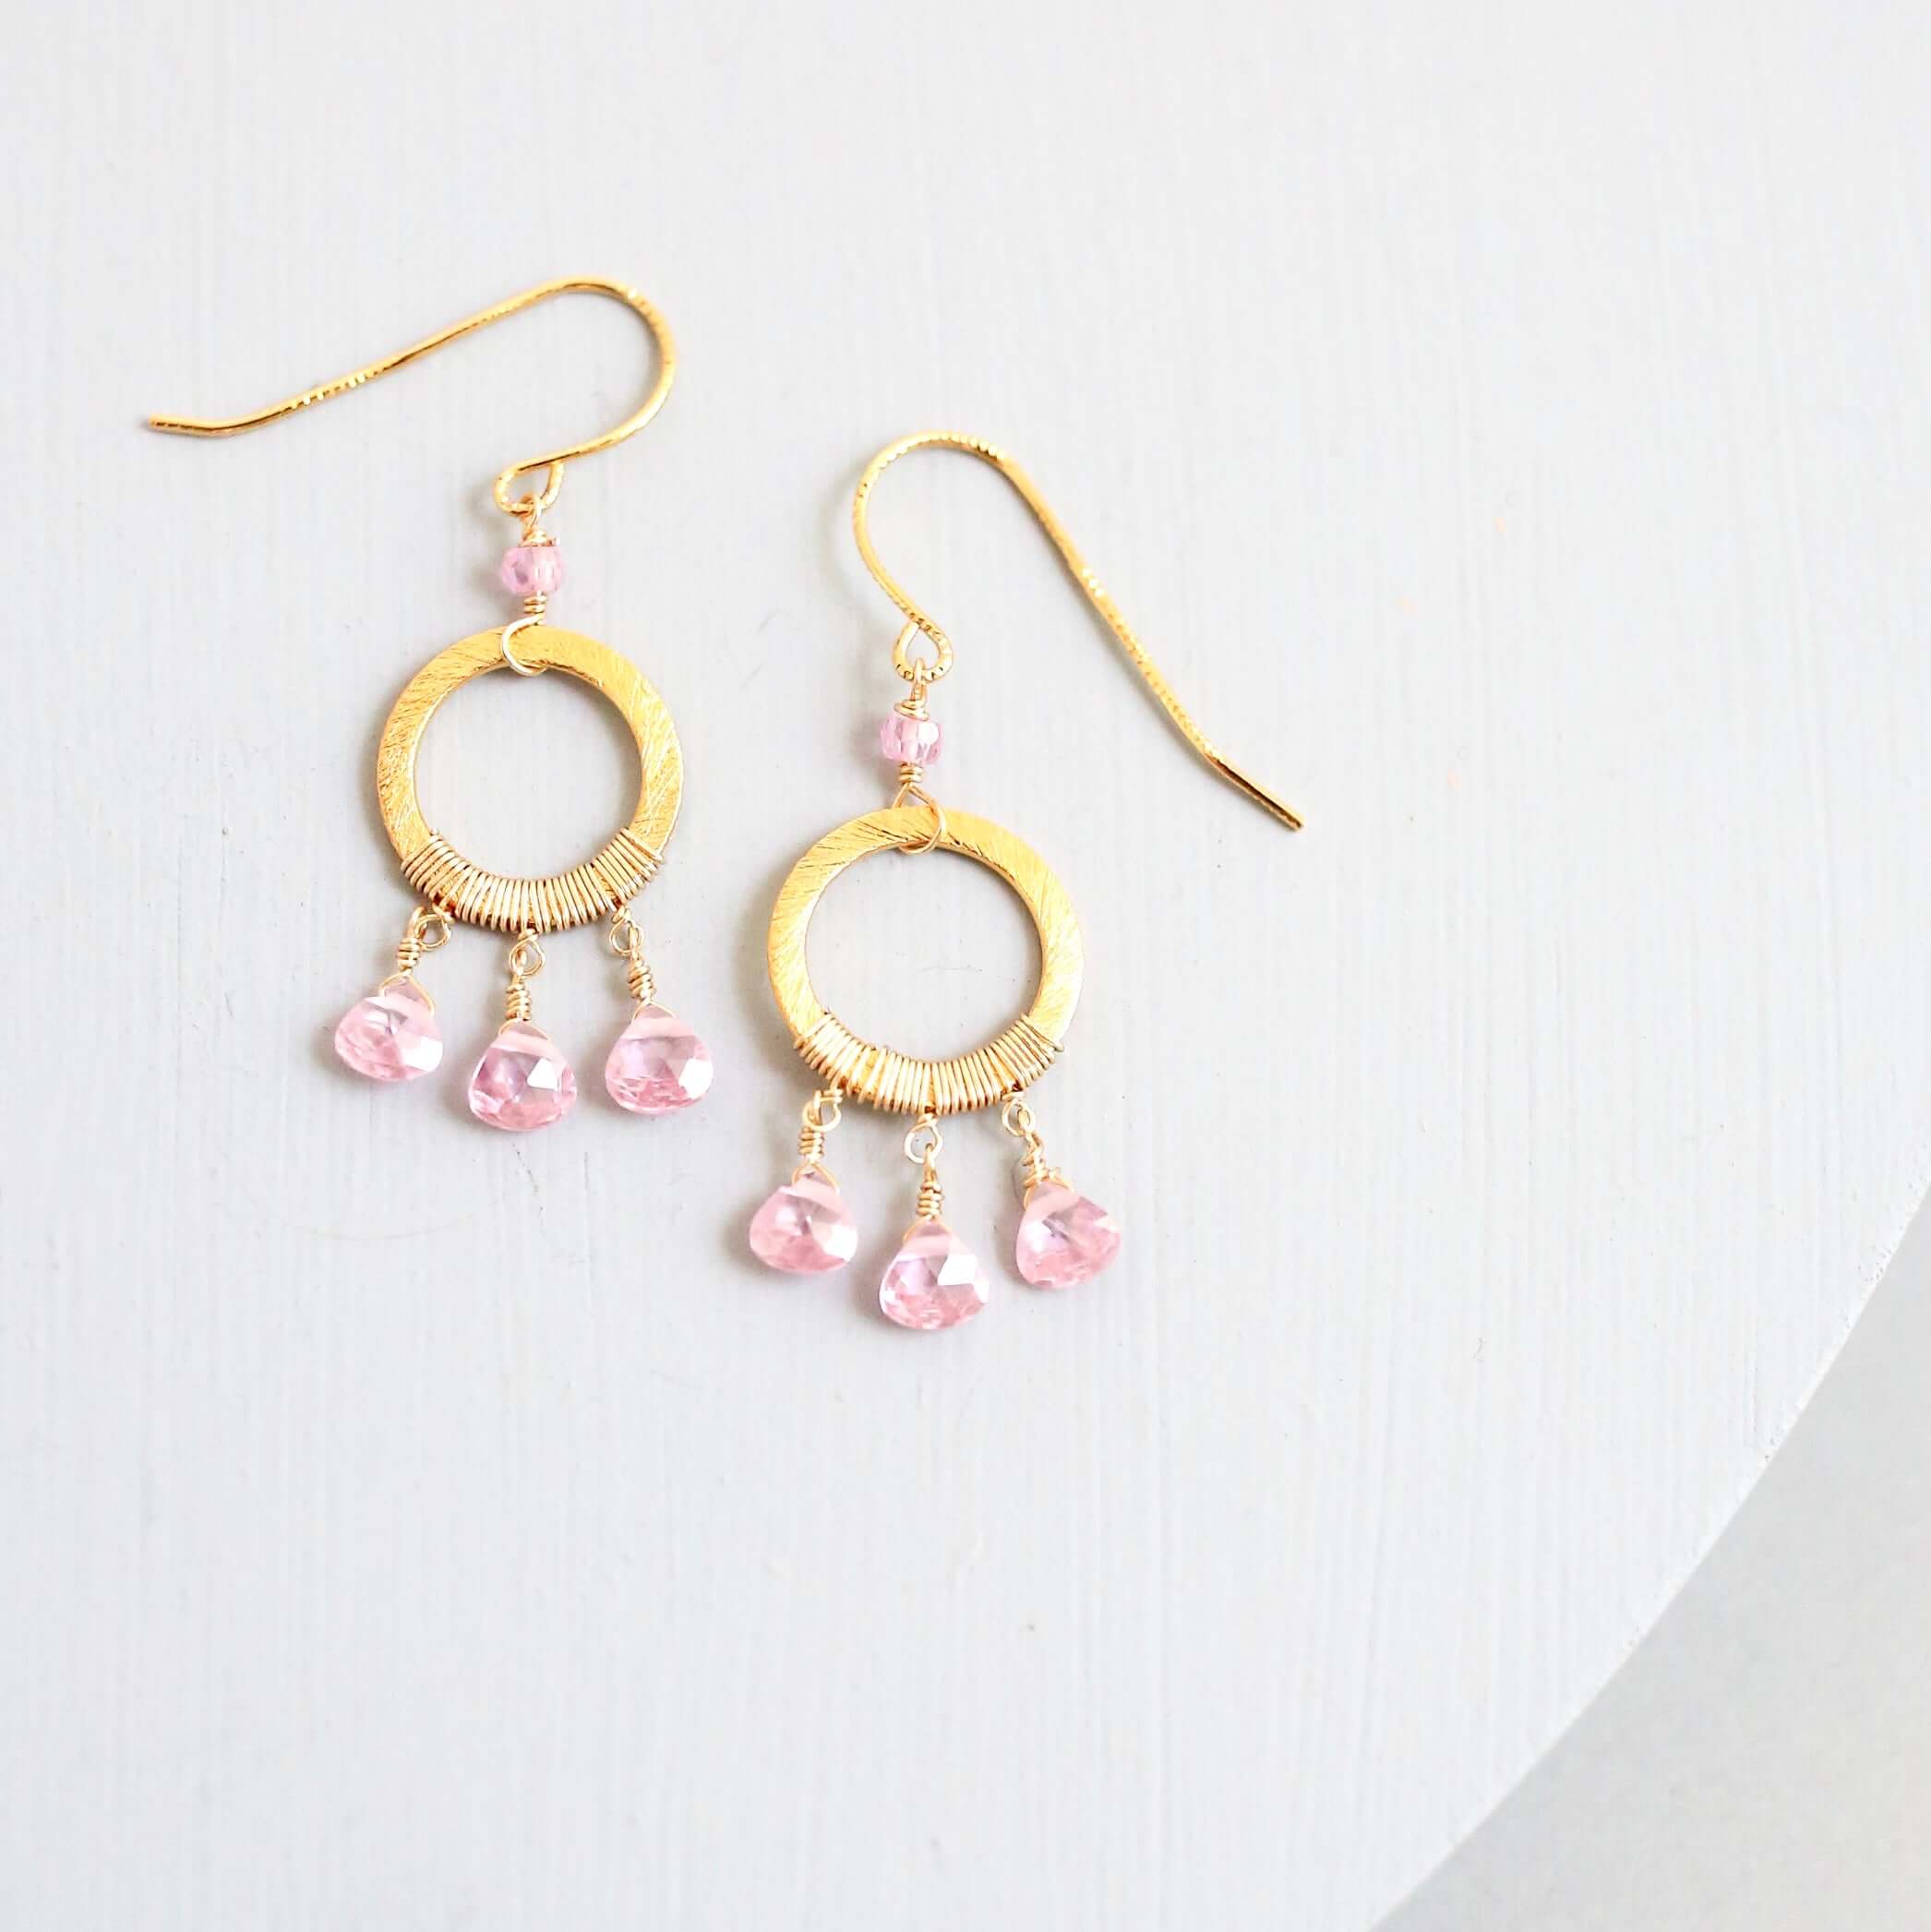 Boho Mini Dream Catcher Earrings with Authentic Rose Quartz Gemstones